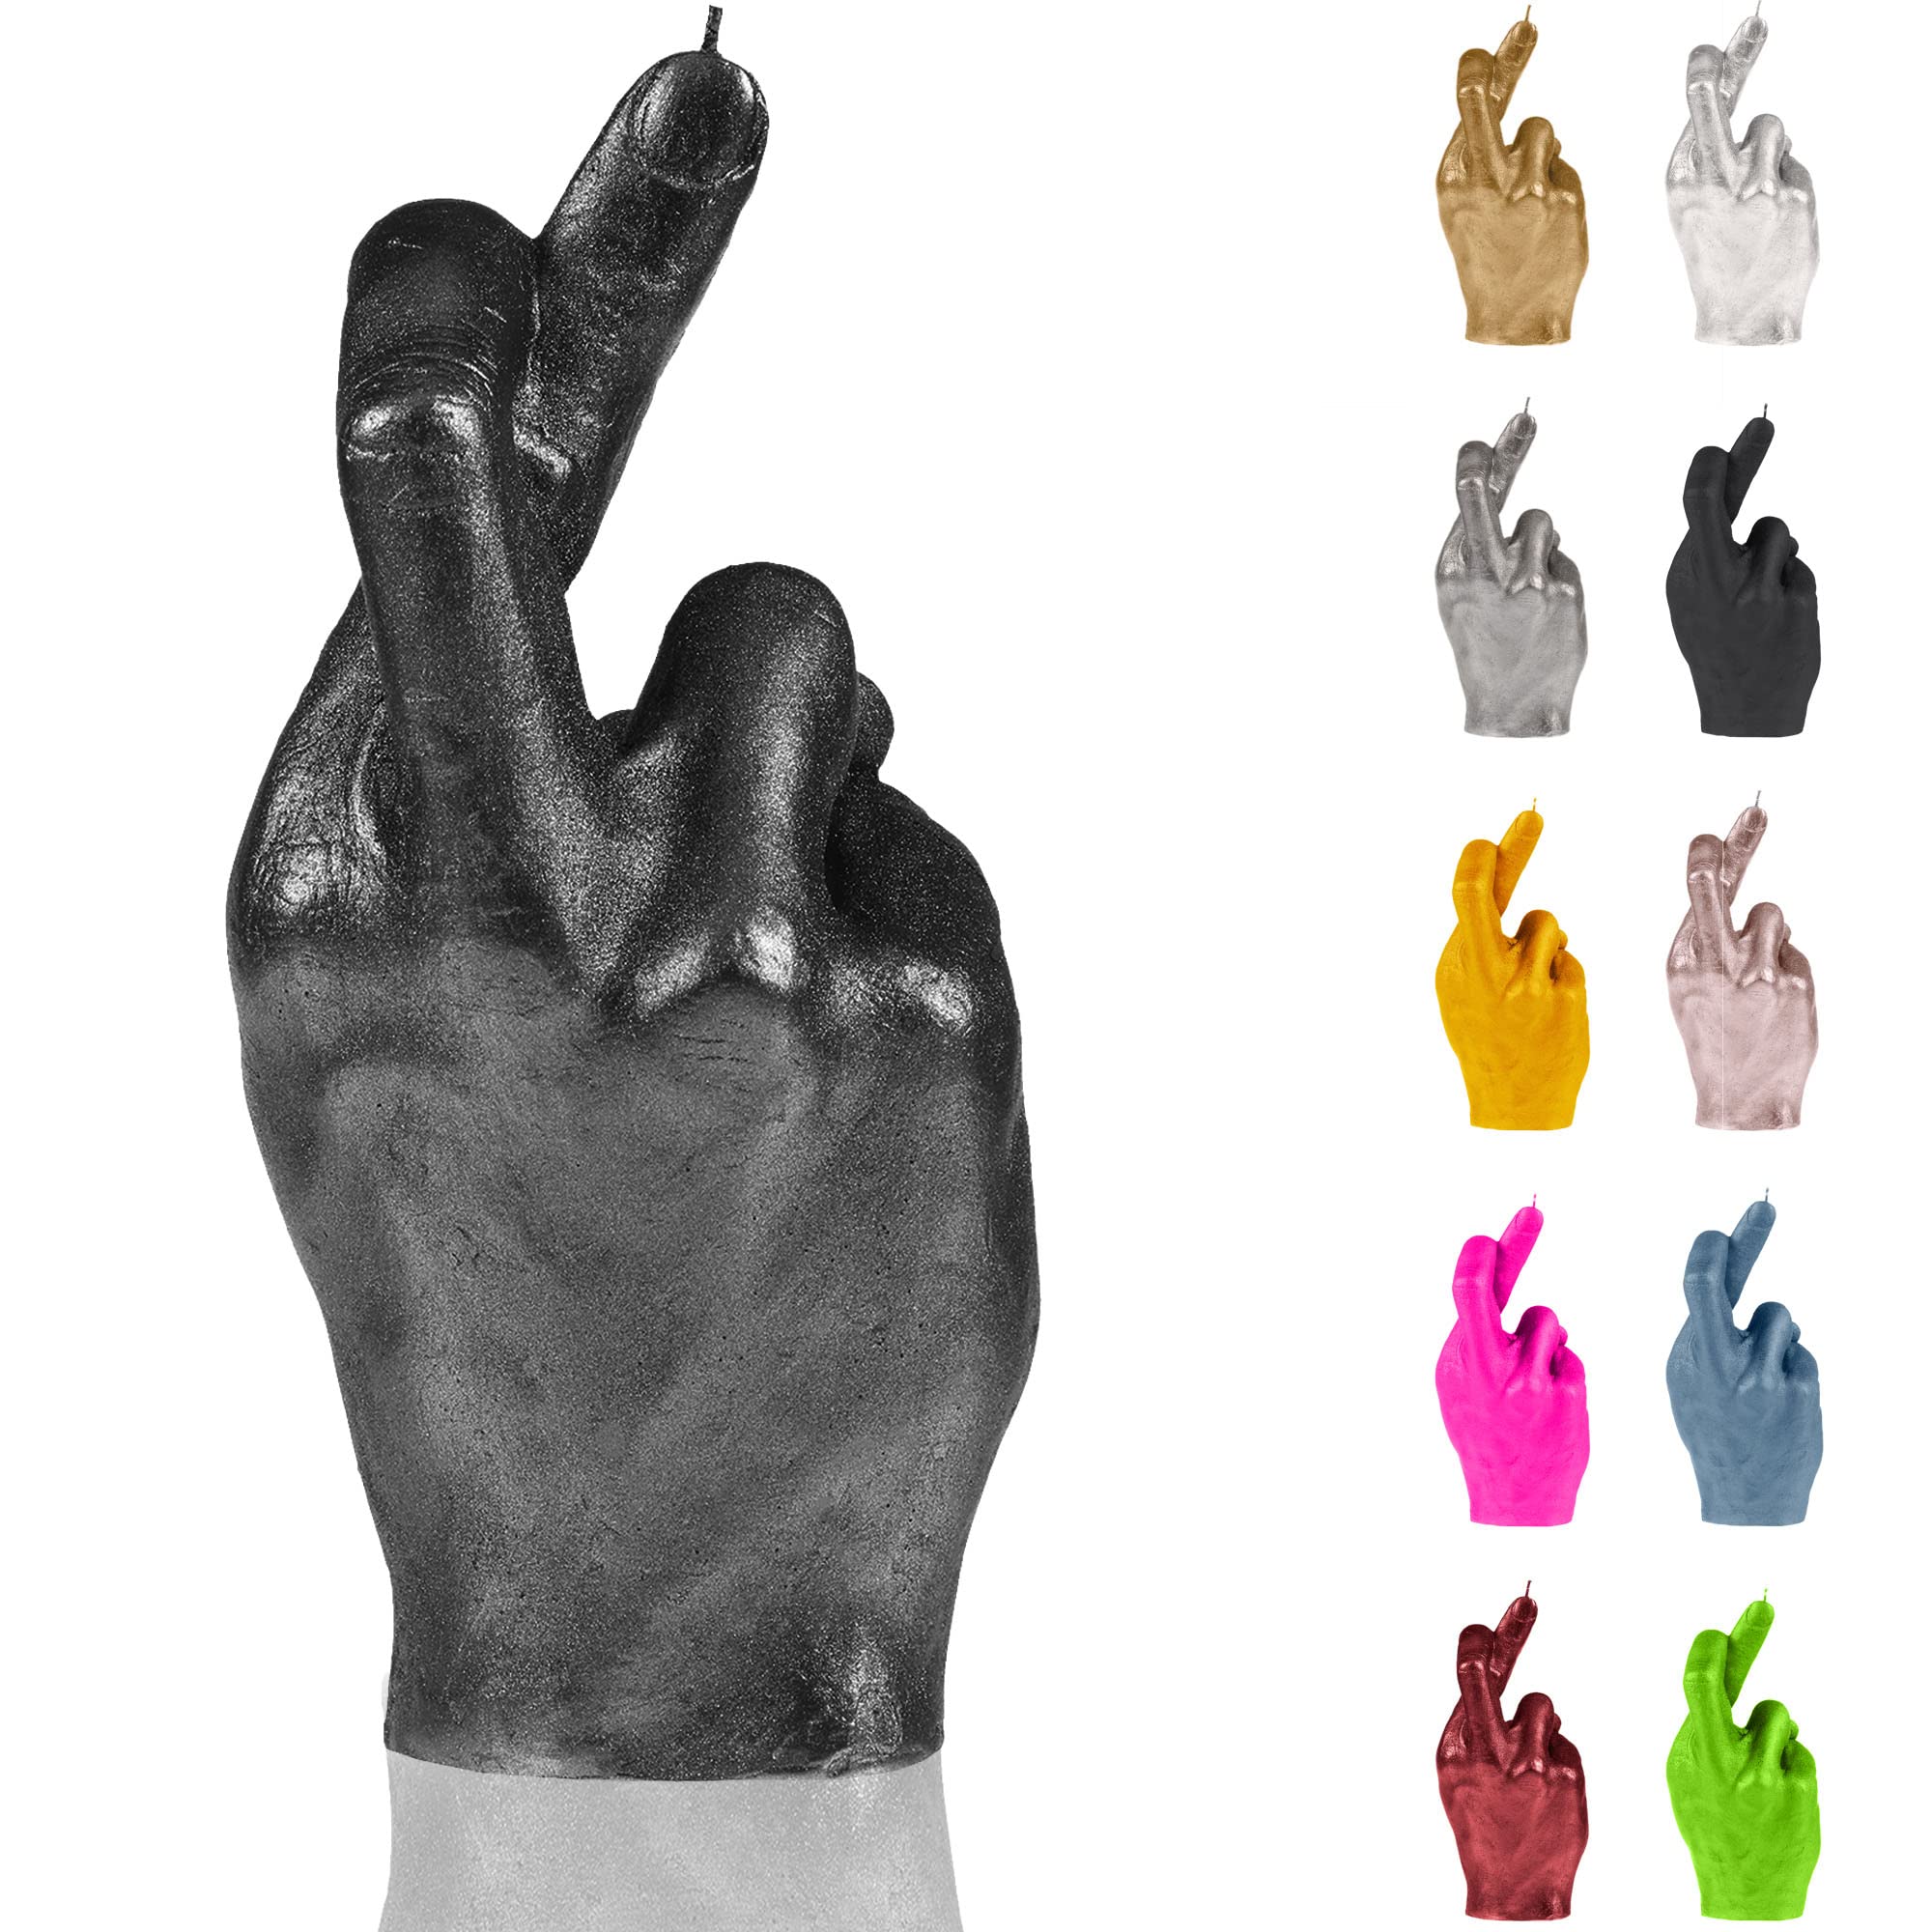 Candellana Kerze Gekreuzte Finger, Höhe: 19,4 cm, Schwarz Metallic, Brennzeit 30h, Kerzengröße gleicht 1:1 Einer realen Hand, Handgefertigt in der EU